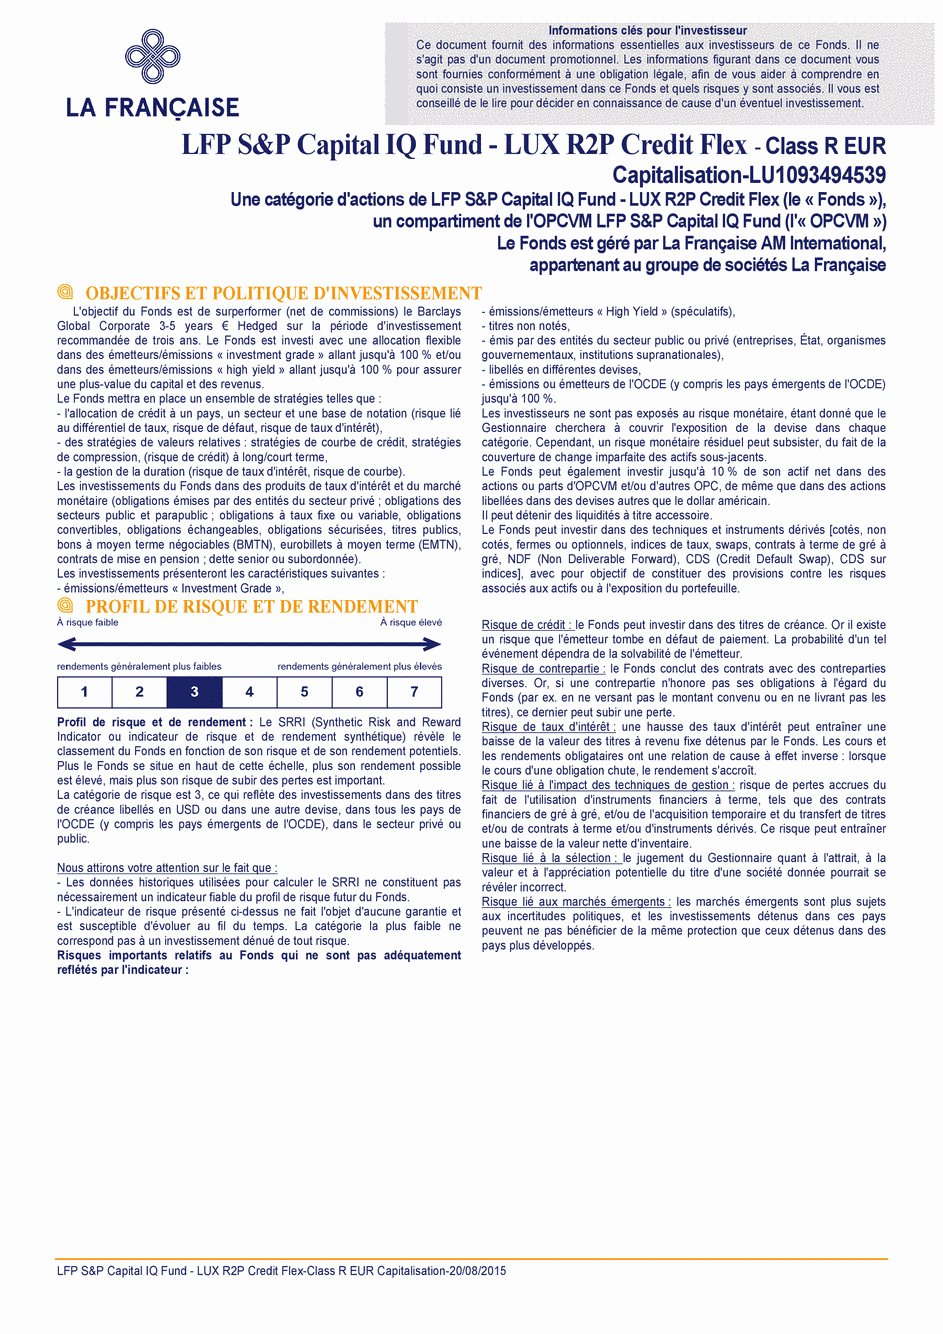 DICI LFP S&P Capital IQ Fund - LUX R2P Credit Flex R CAP EUR - 20/08/2015 - Français